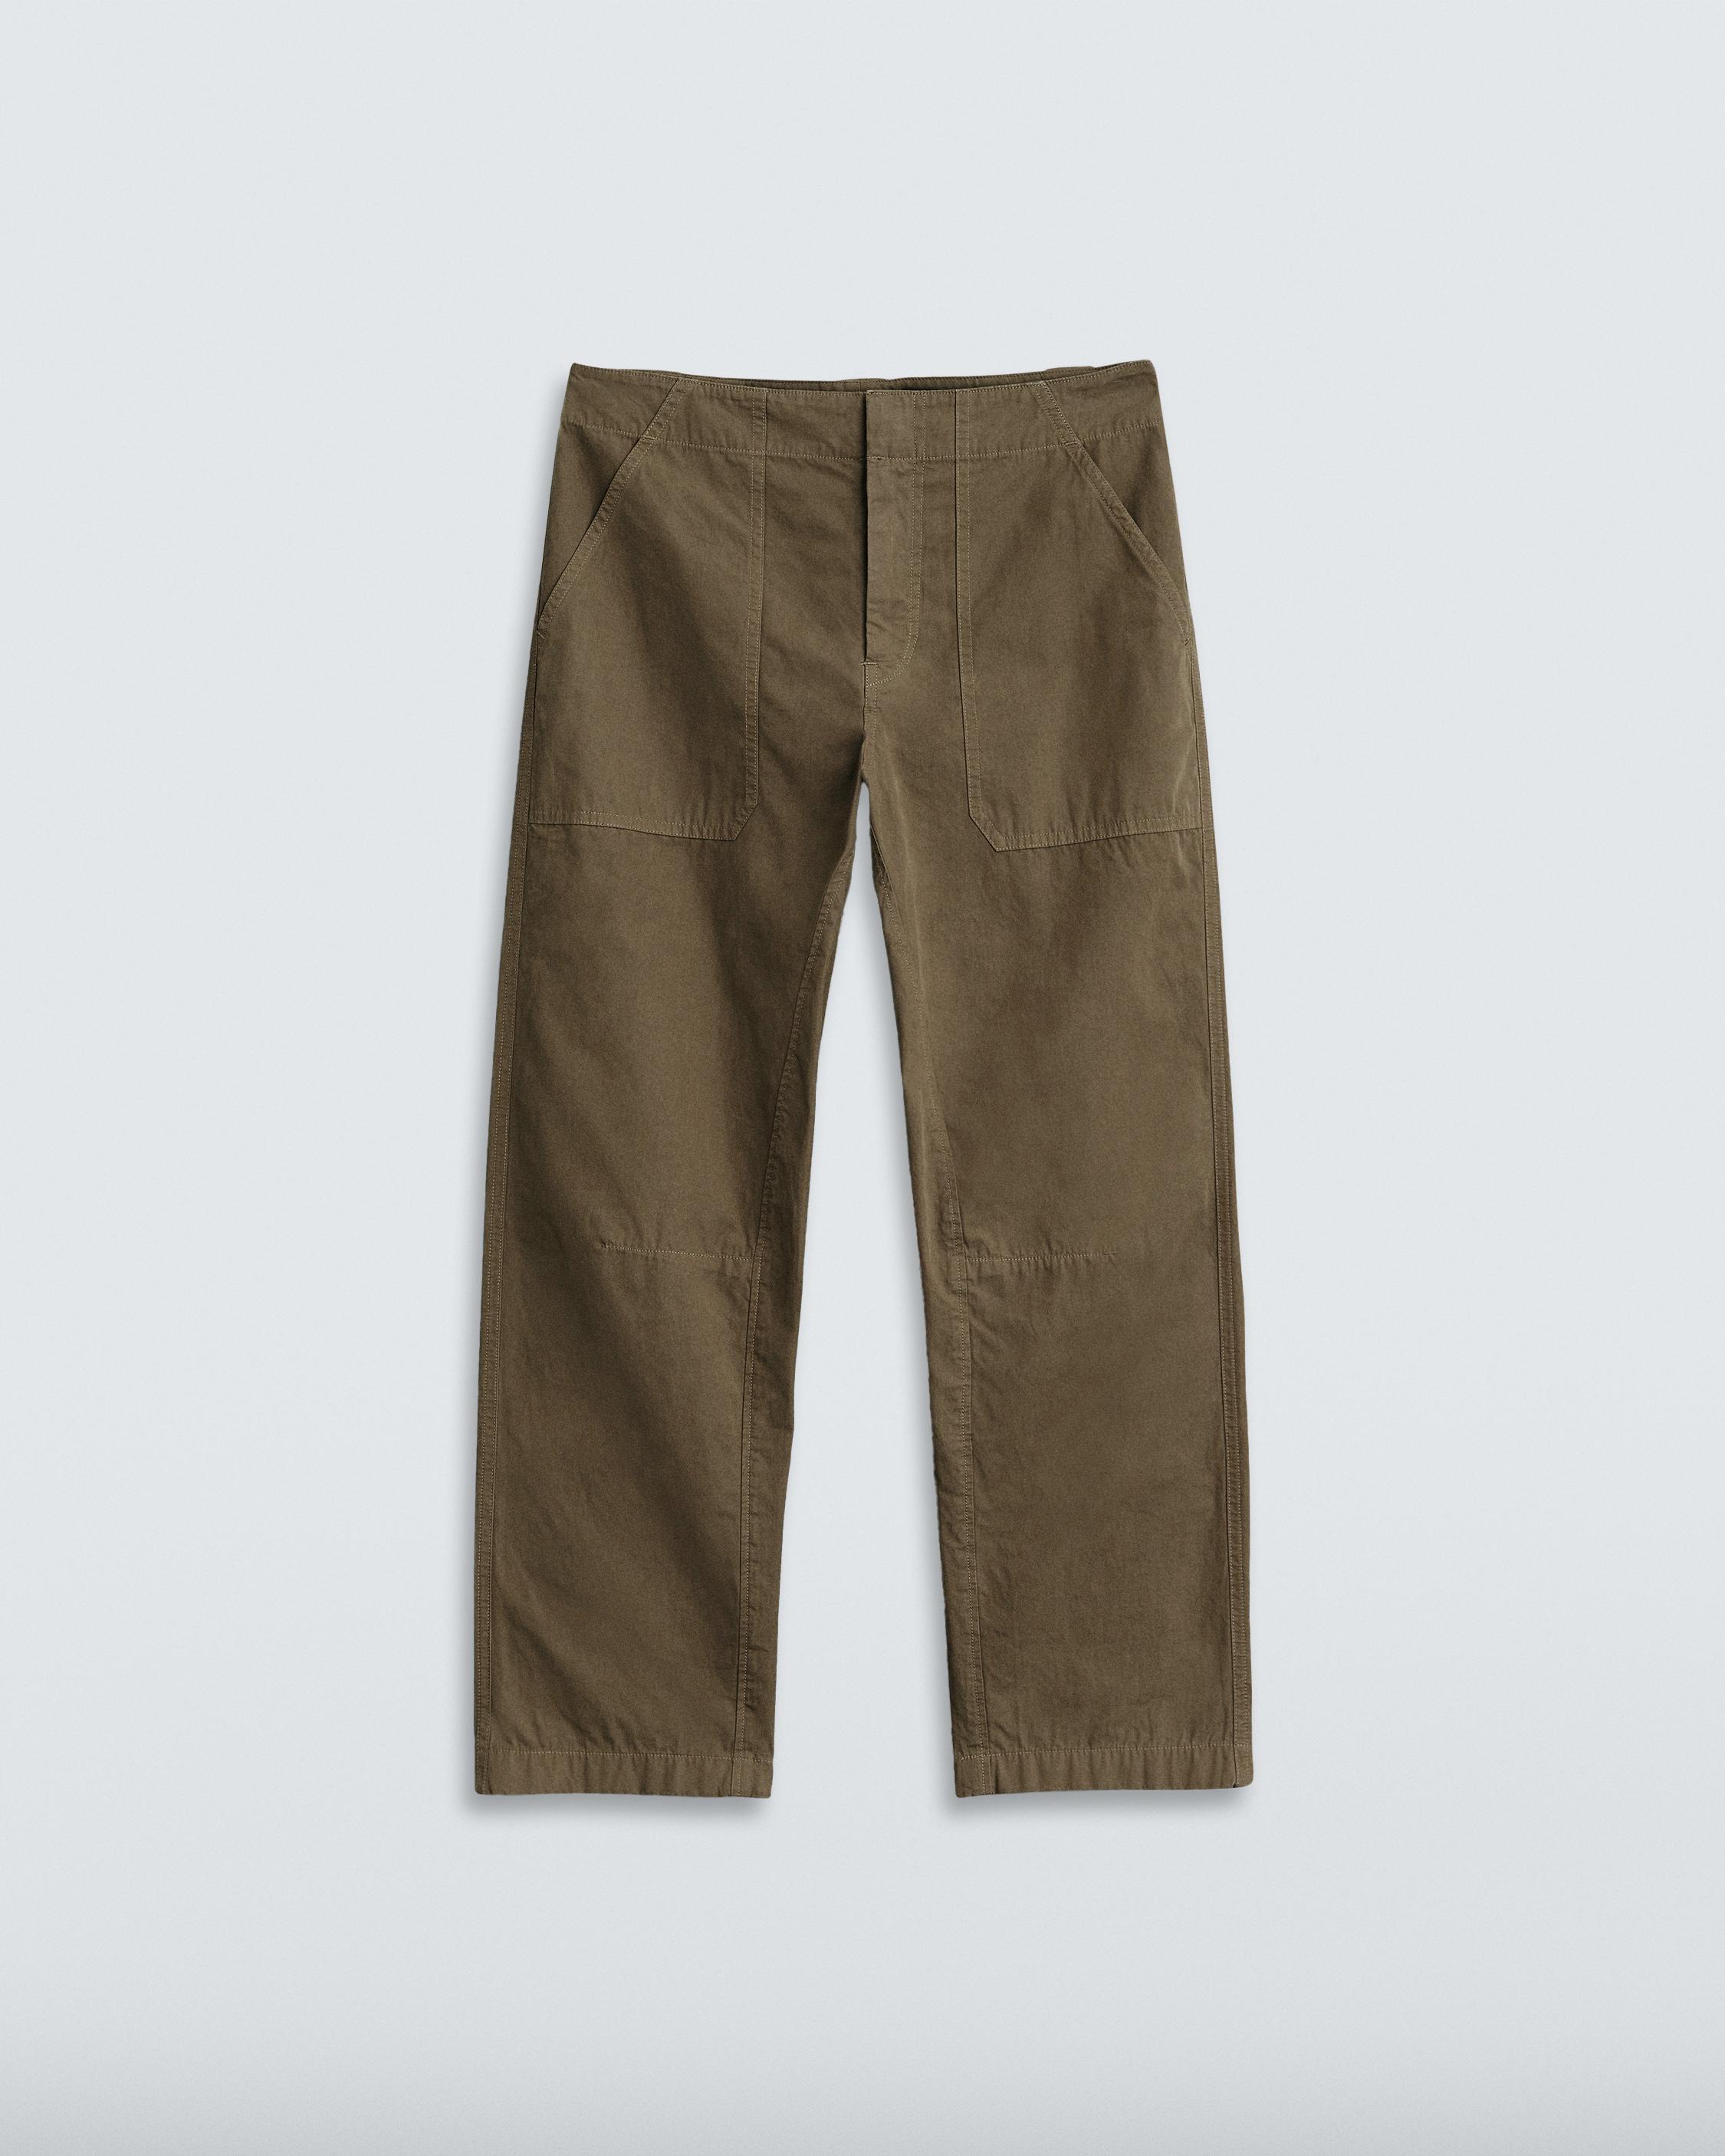 Leyton Cotton Workwear Pants